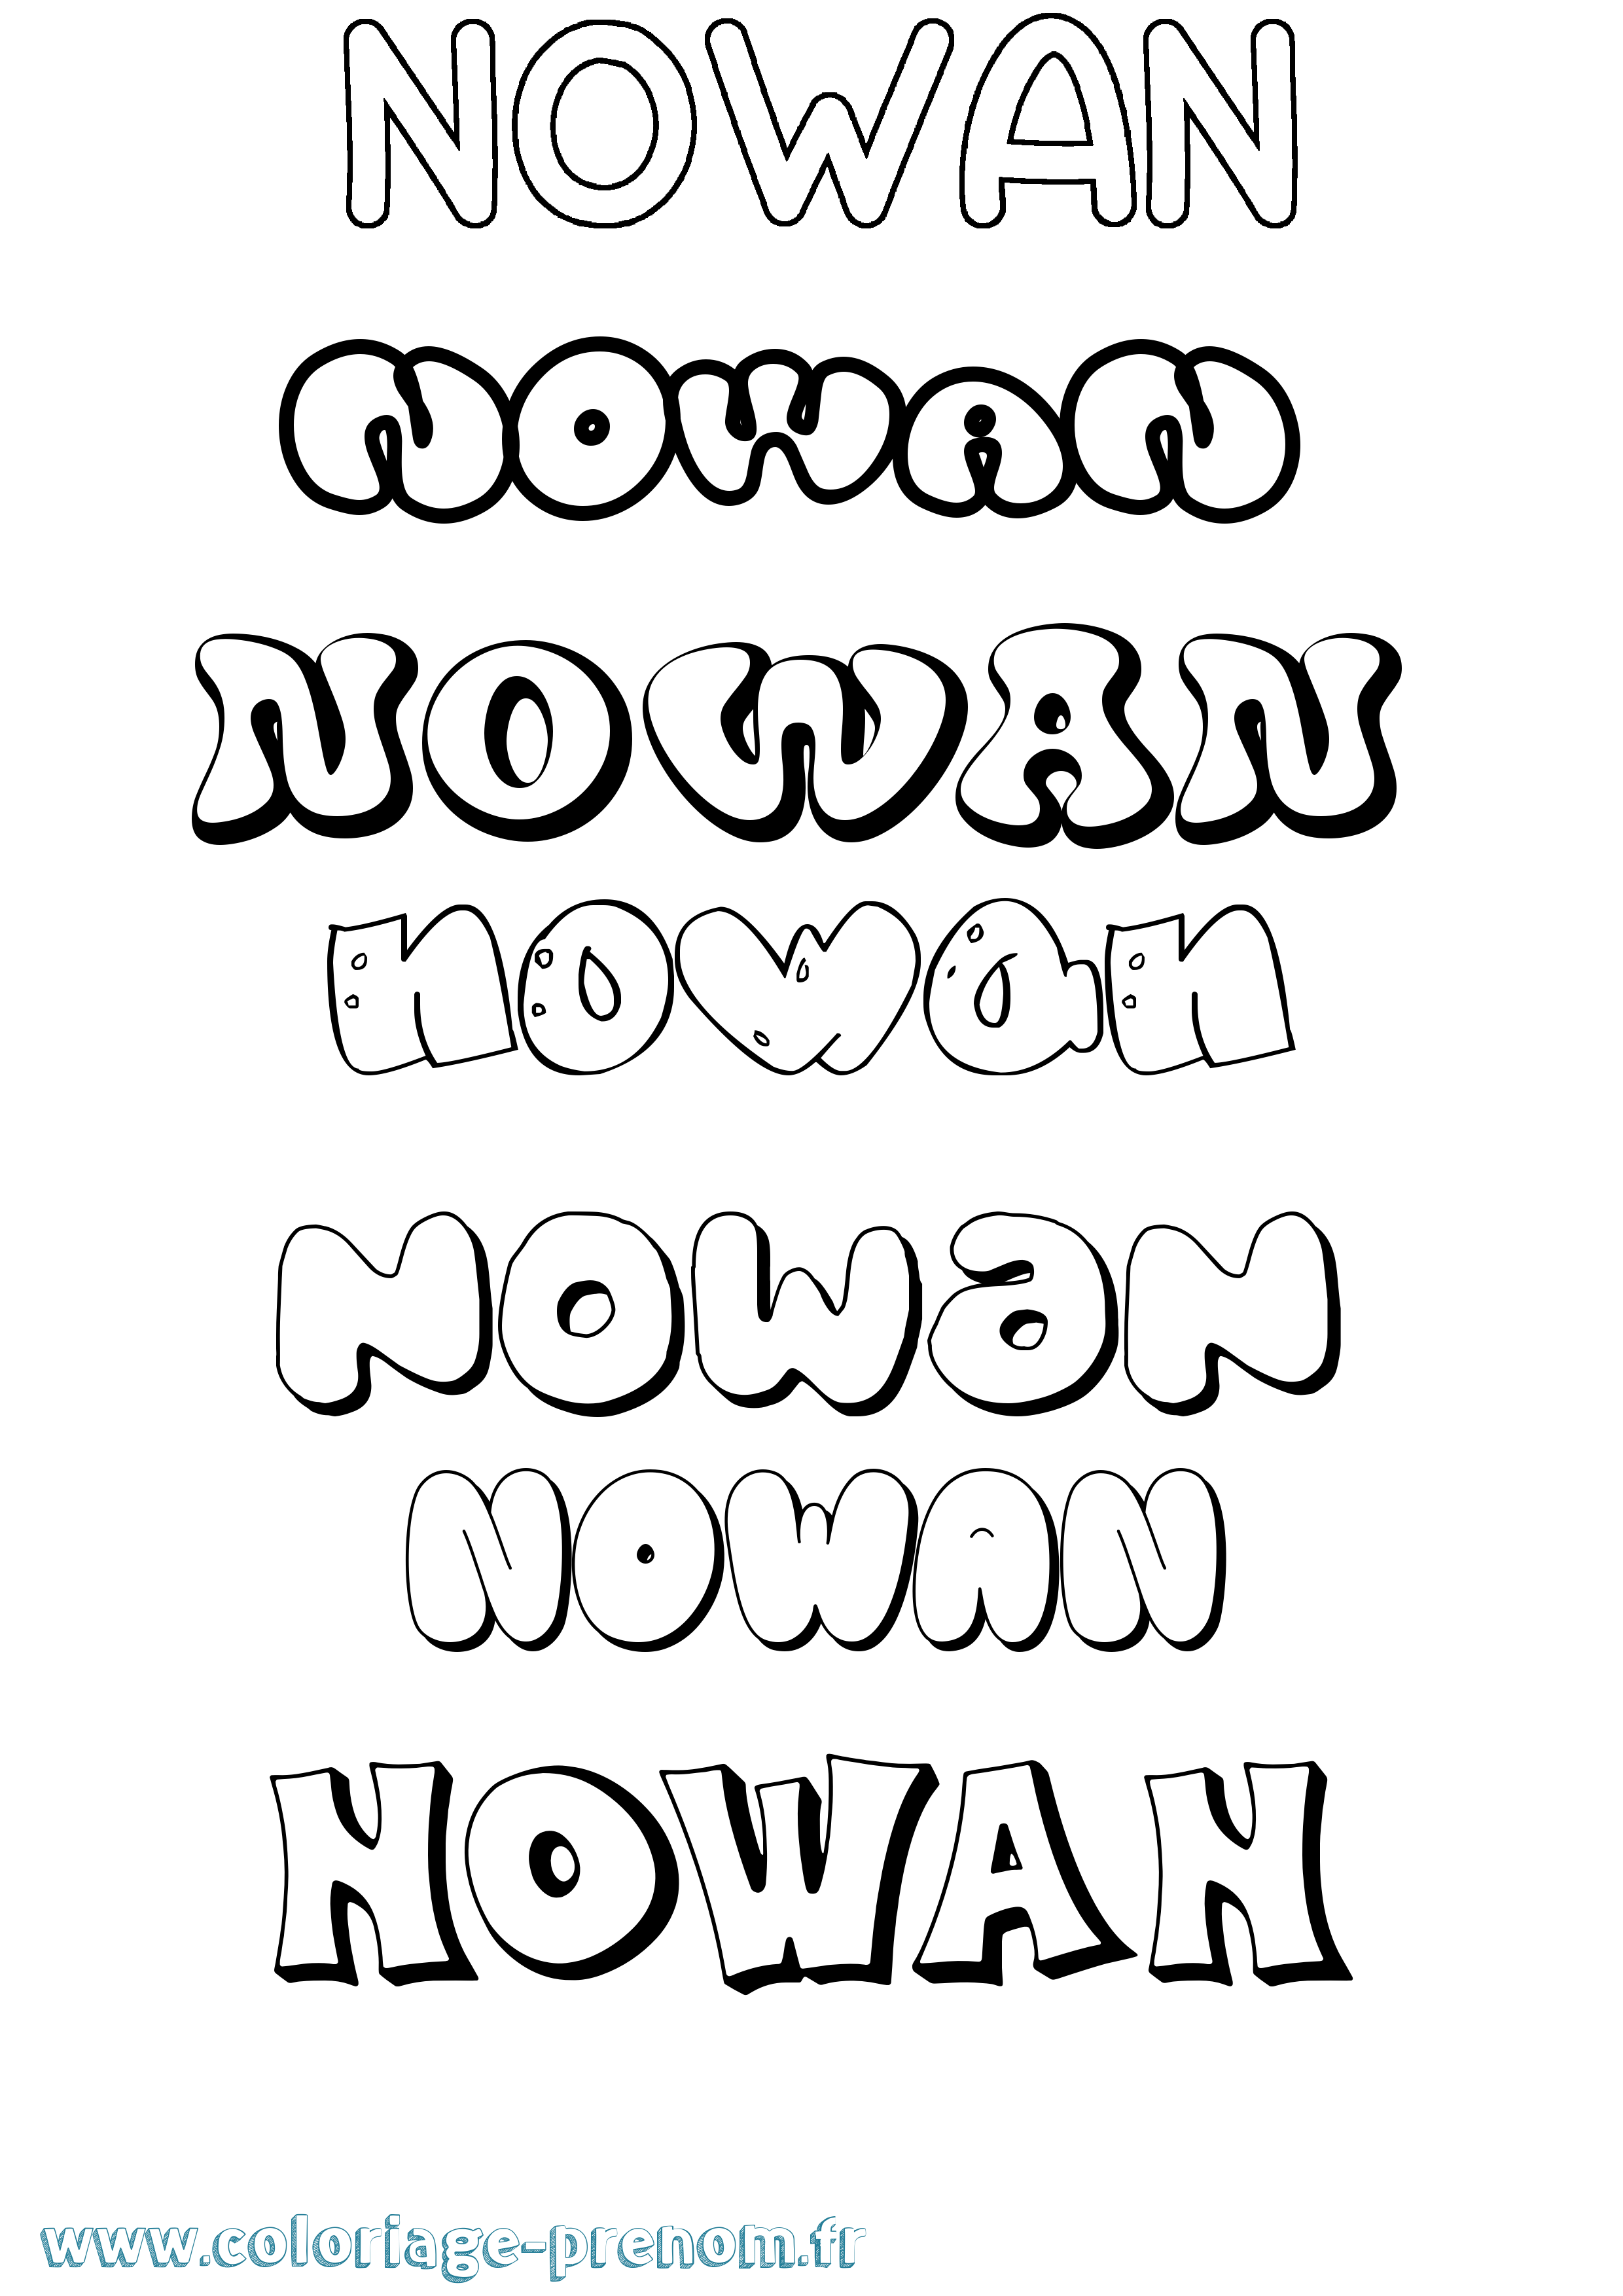 Coloriage prénom Nowan Bubble